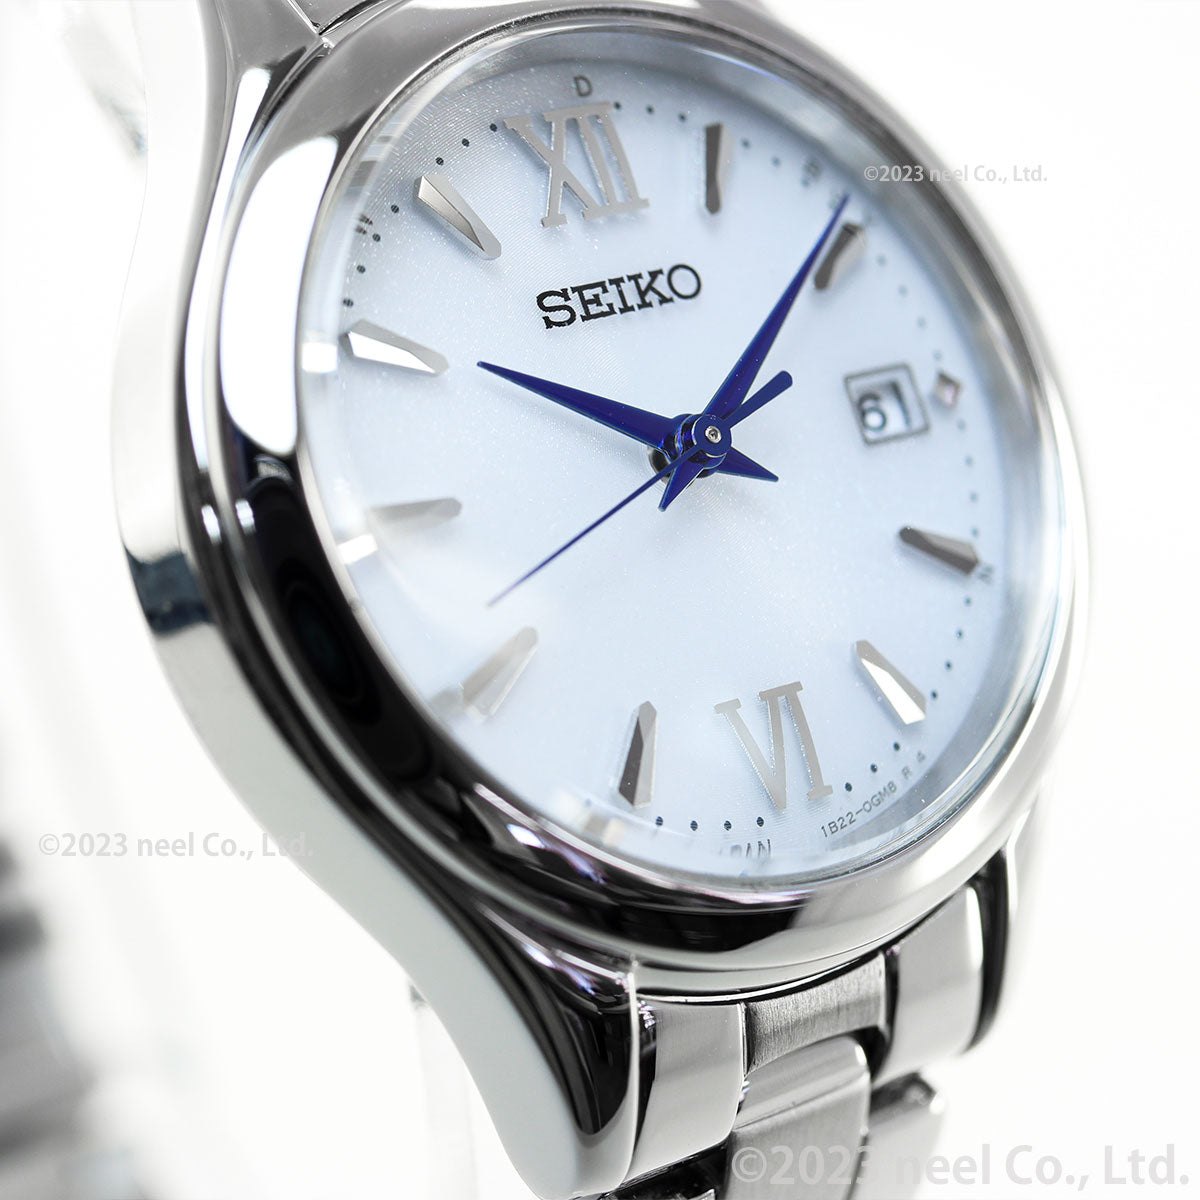 セイコー セレクション SEIKO SELECTION Sシリーズ ショップ専用 流通限定モデル ソーラー 電波時計 腕時計 レディース SWFH129